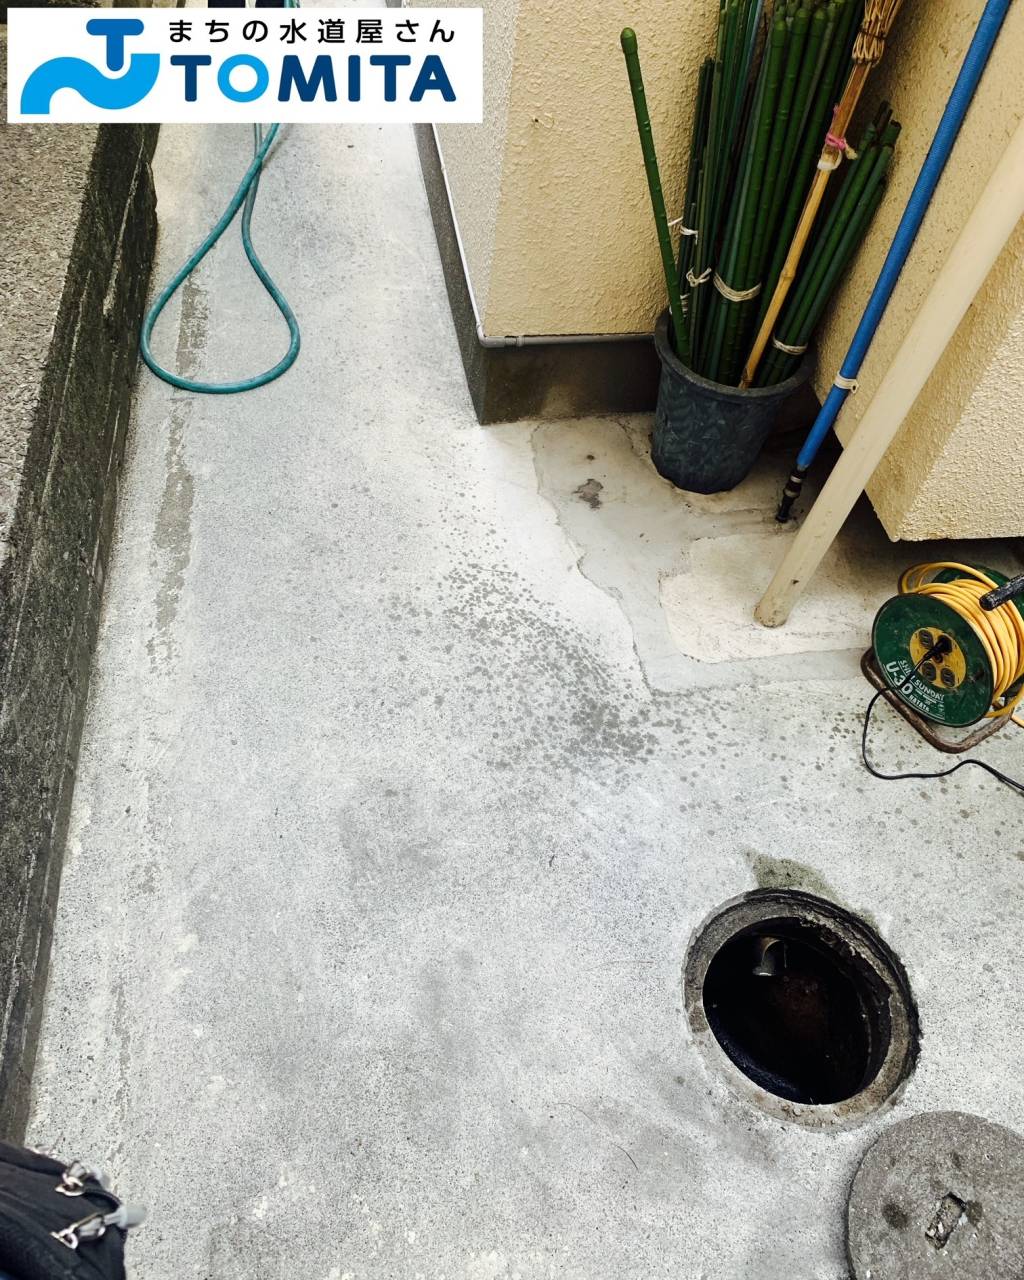 【施工前】排水桝から配管の詰りの状況や配管の経路を確認します。一部建物の下に配管が施工されている部分もありました。